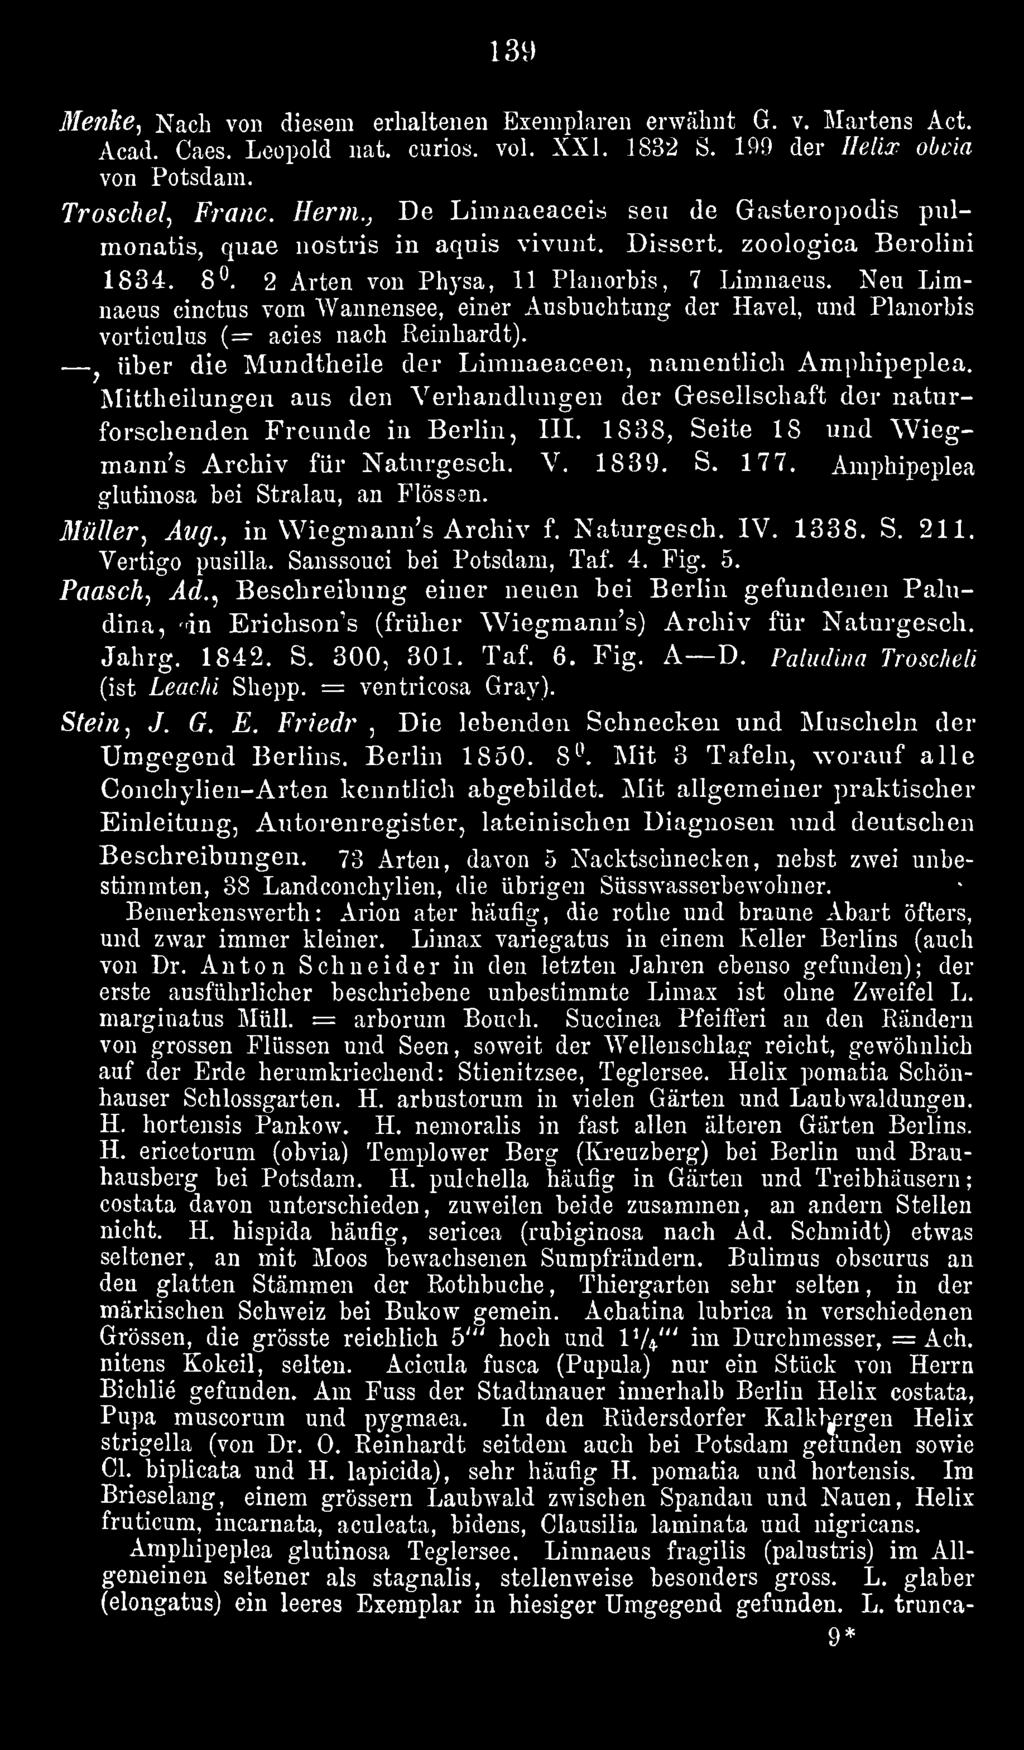 Amphipeplea glutinosa bei Stralau, an Flössen. Müller, Aug., in Wiegmann's Archiv f. Naturgesch. IV. 1338. S. 211. Vertigo pusiua. Sanssouci bei Potsdam, Taf. 4. Fig. 5. Paasch., Ad.